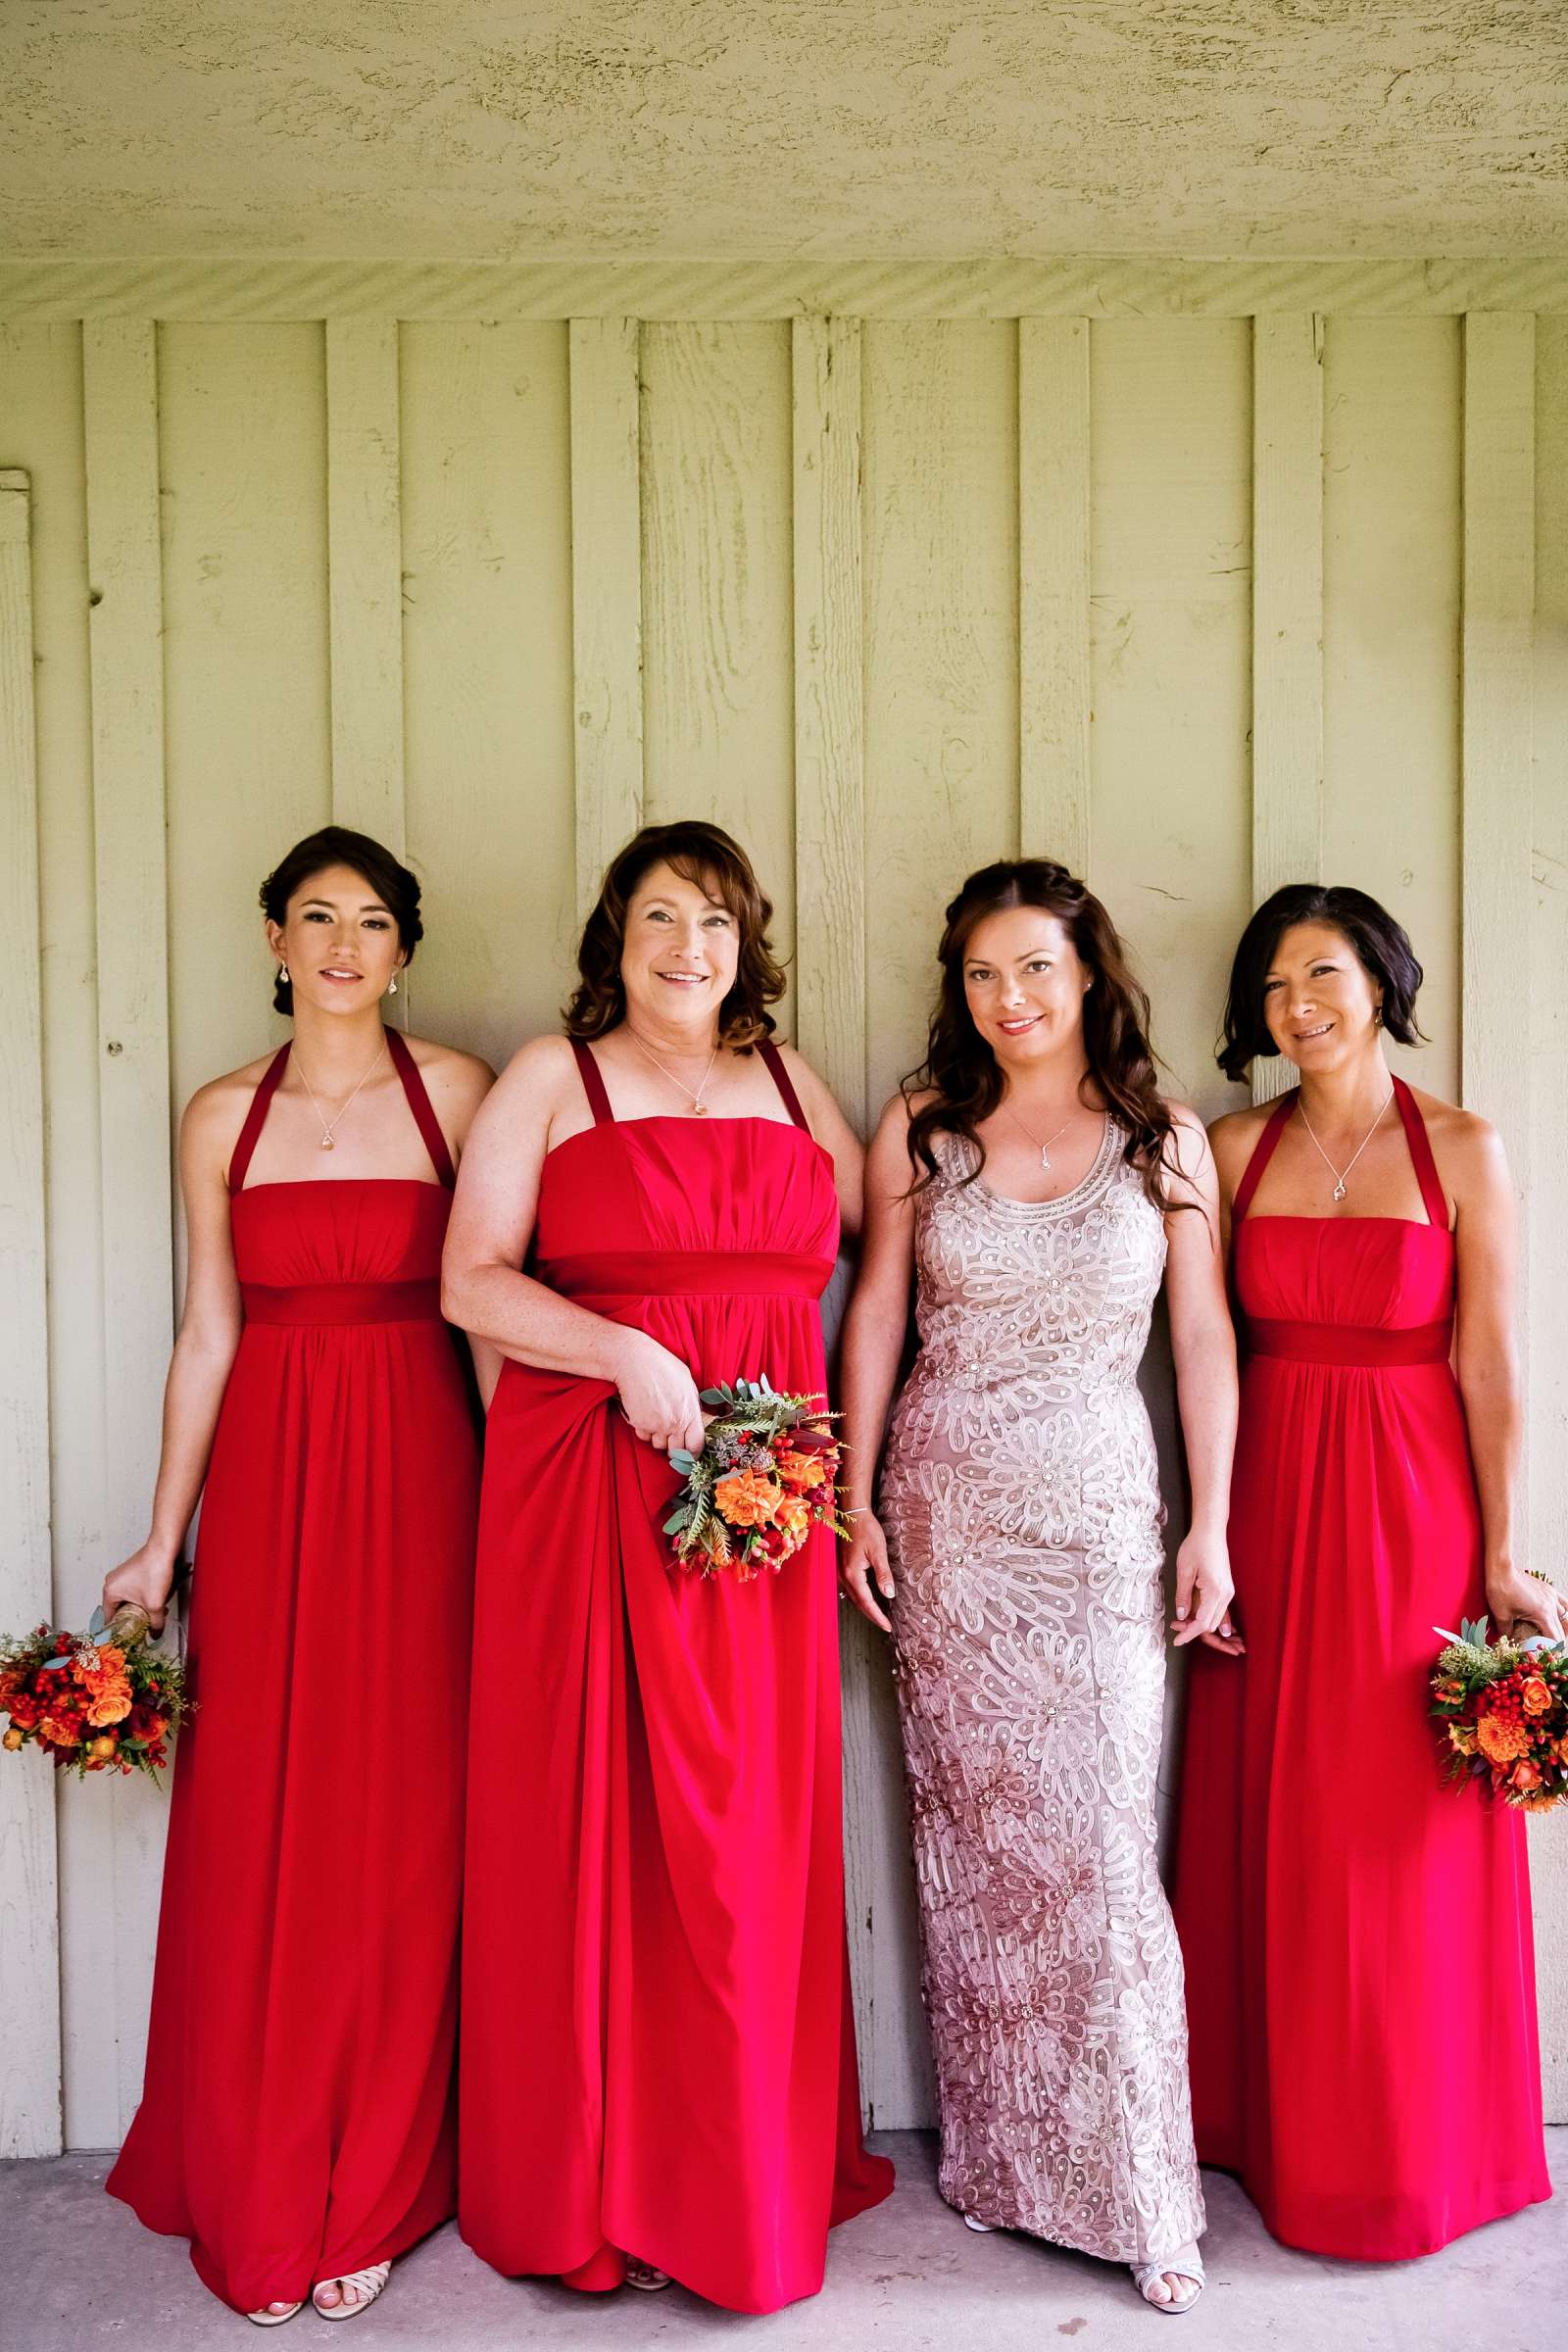 Temecula Creek Inn Wedding, Elizabeth and Natasha Wedding Photo #325768 by True Photography